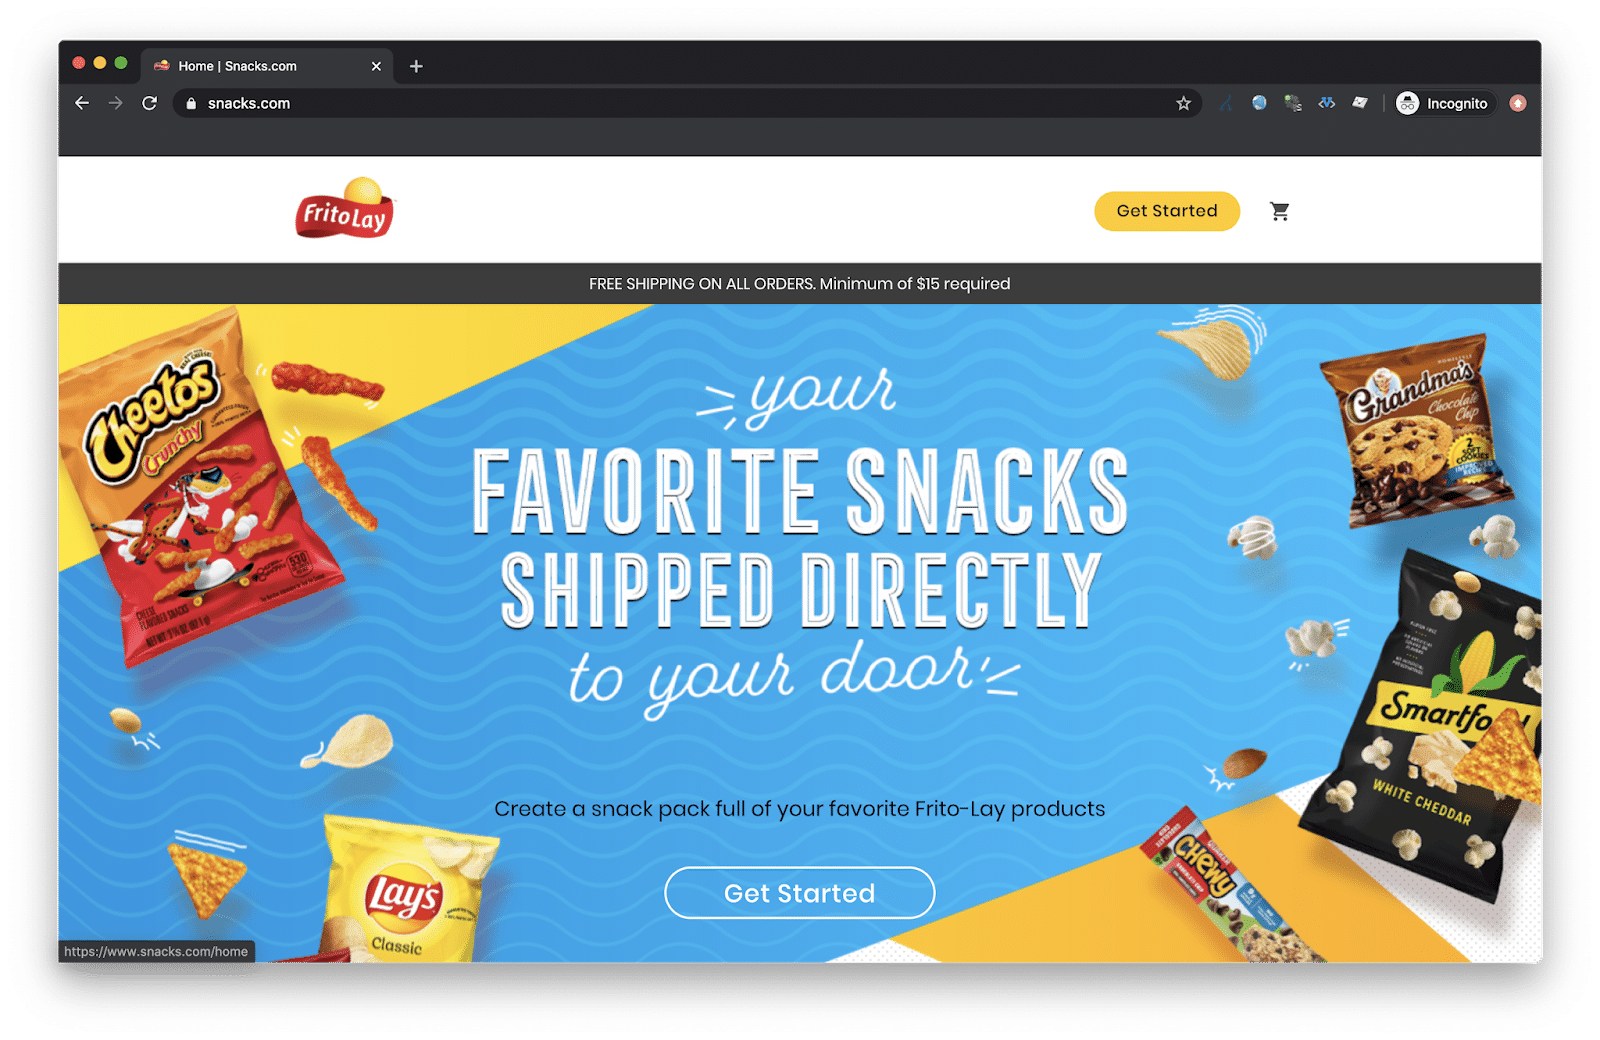 Frito Lay ships snacks home through snacks.com